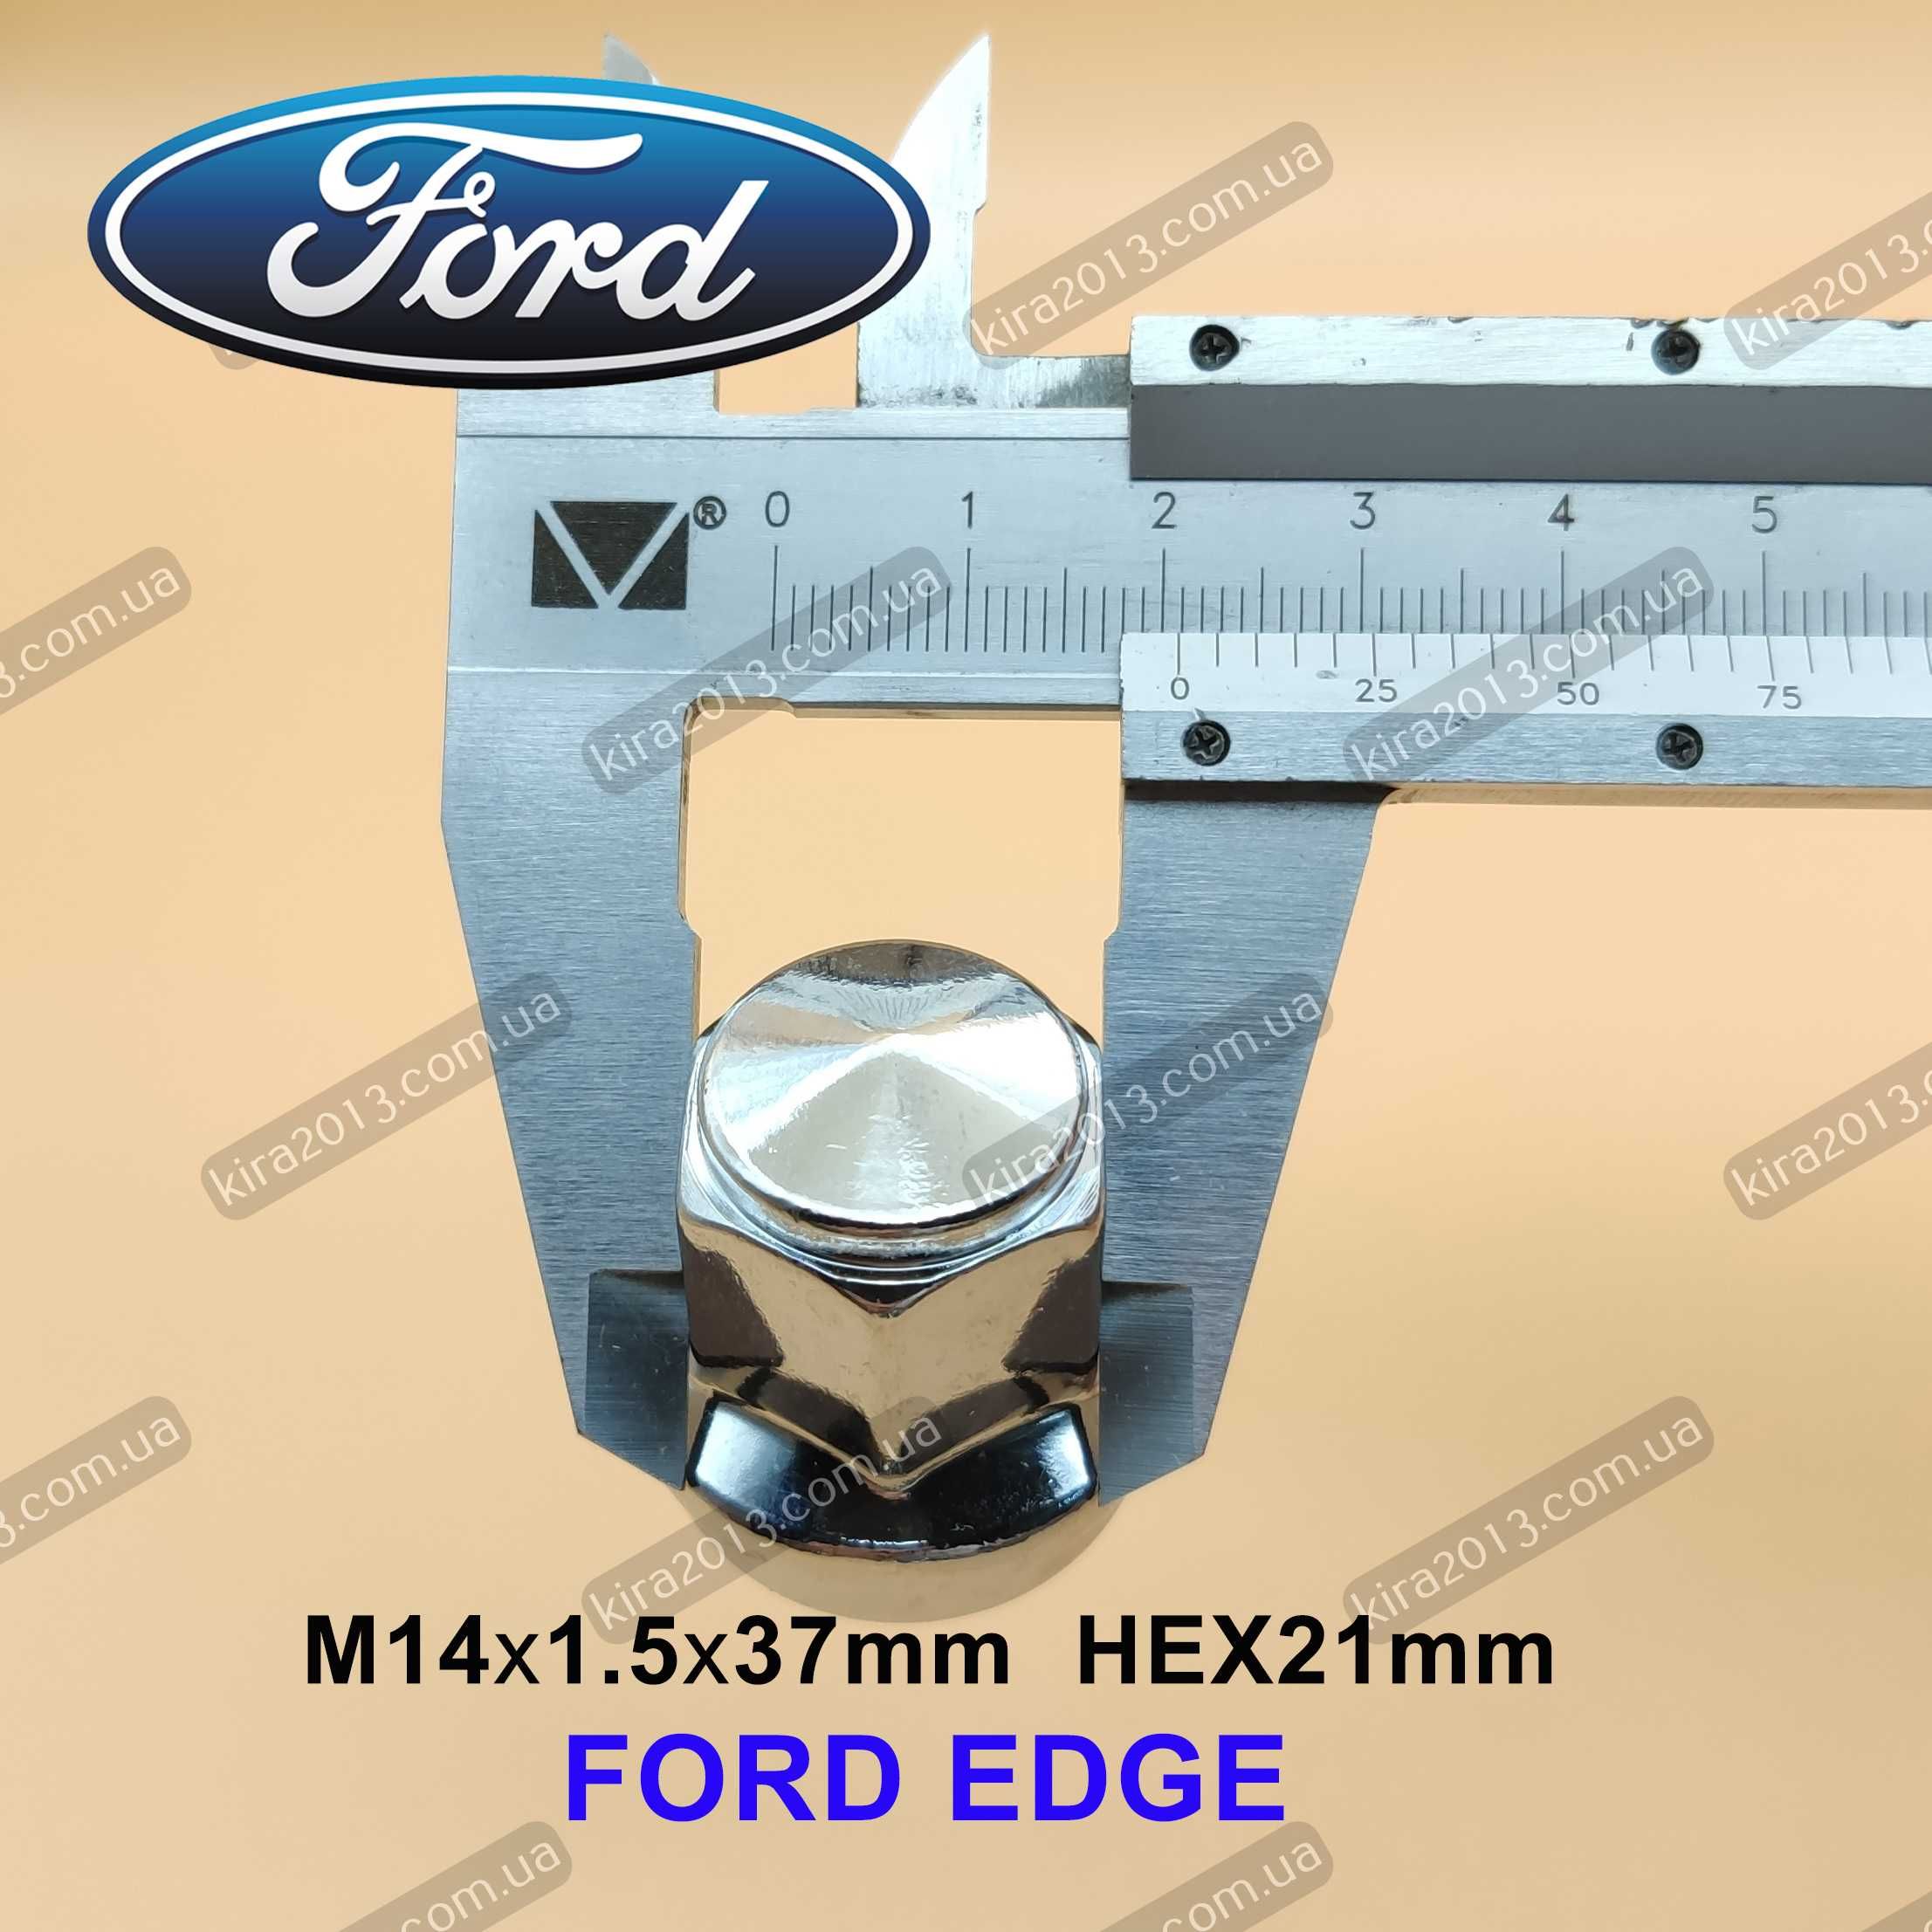 Колесная гайка Форд Эдж Ford Edge Гайка Ford M14x1.5 большой конус